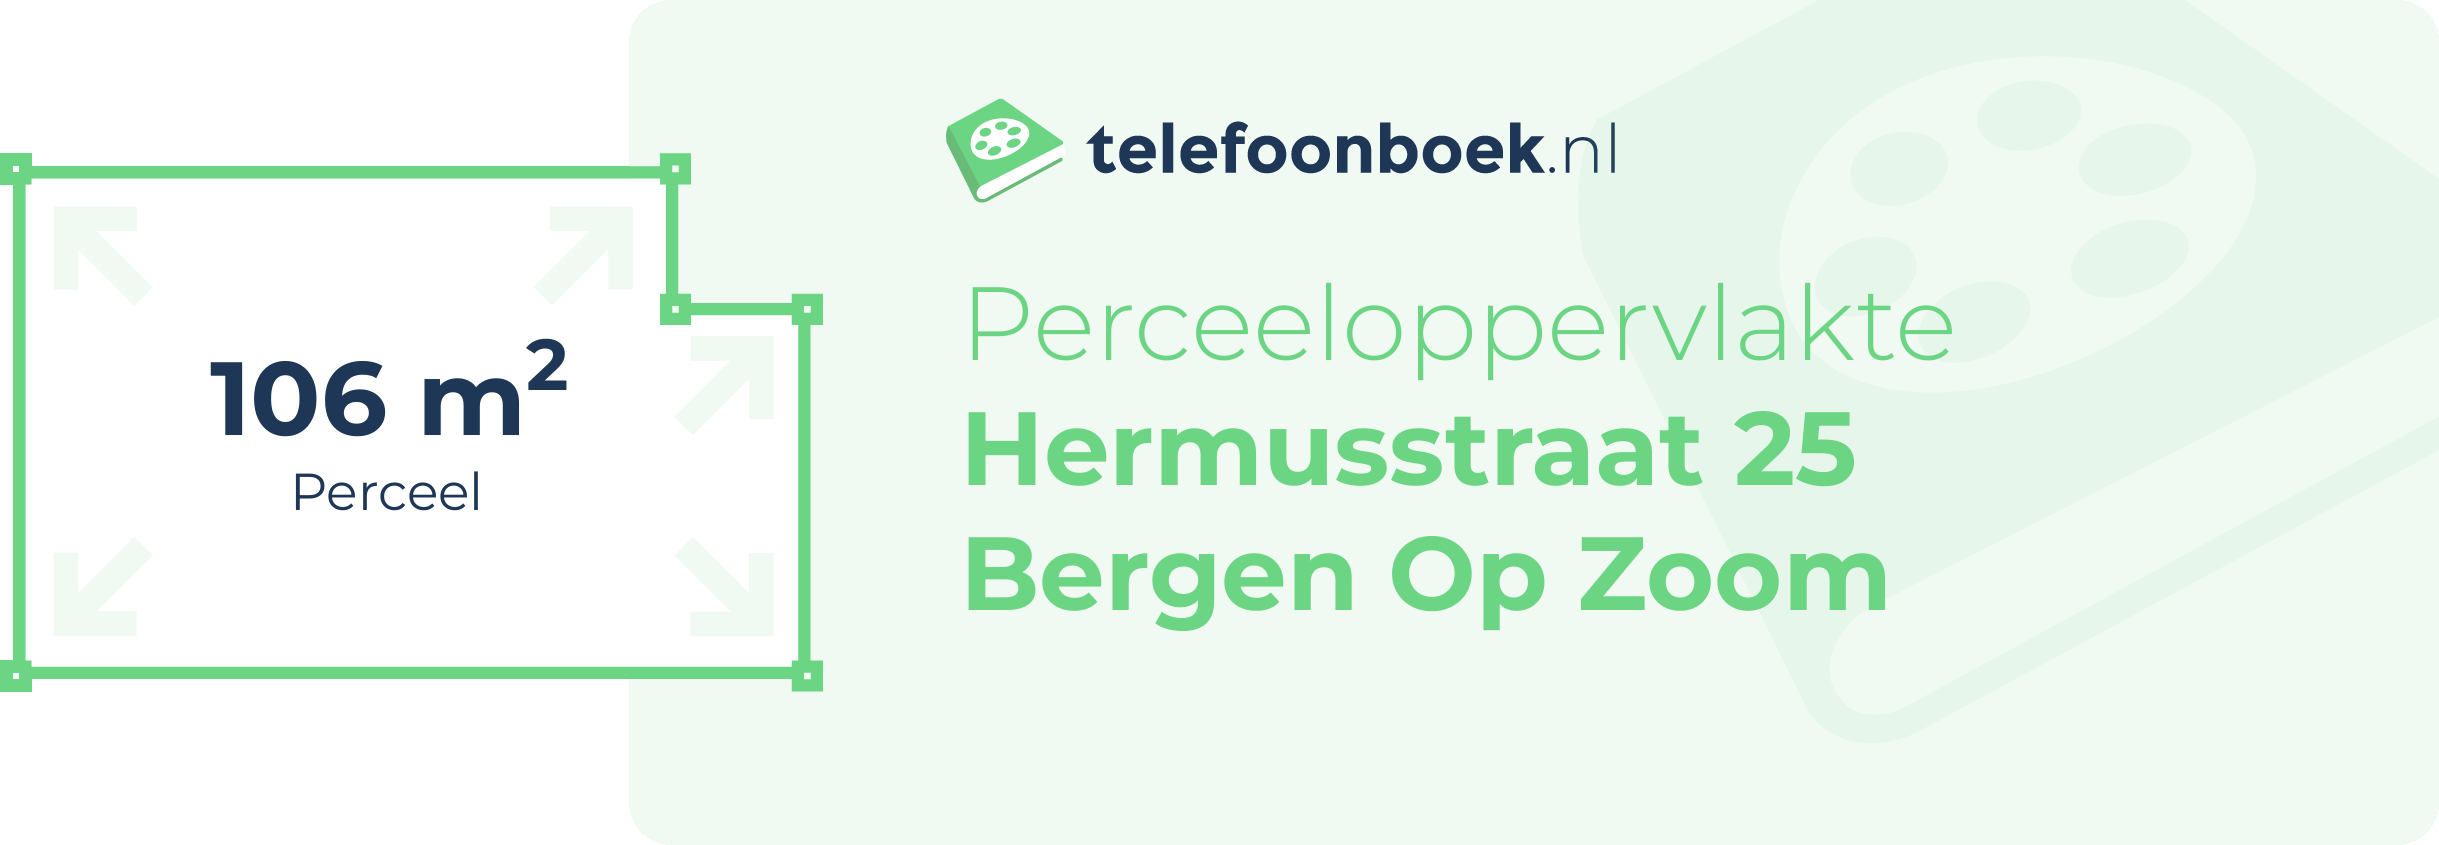 Perceeloppervlakte Hermusstraat 25 Bergen Op Zoom